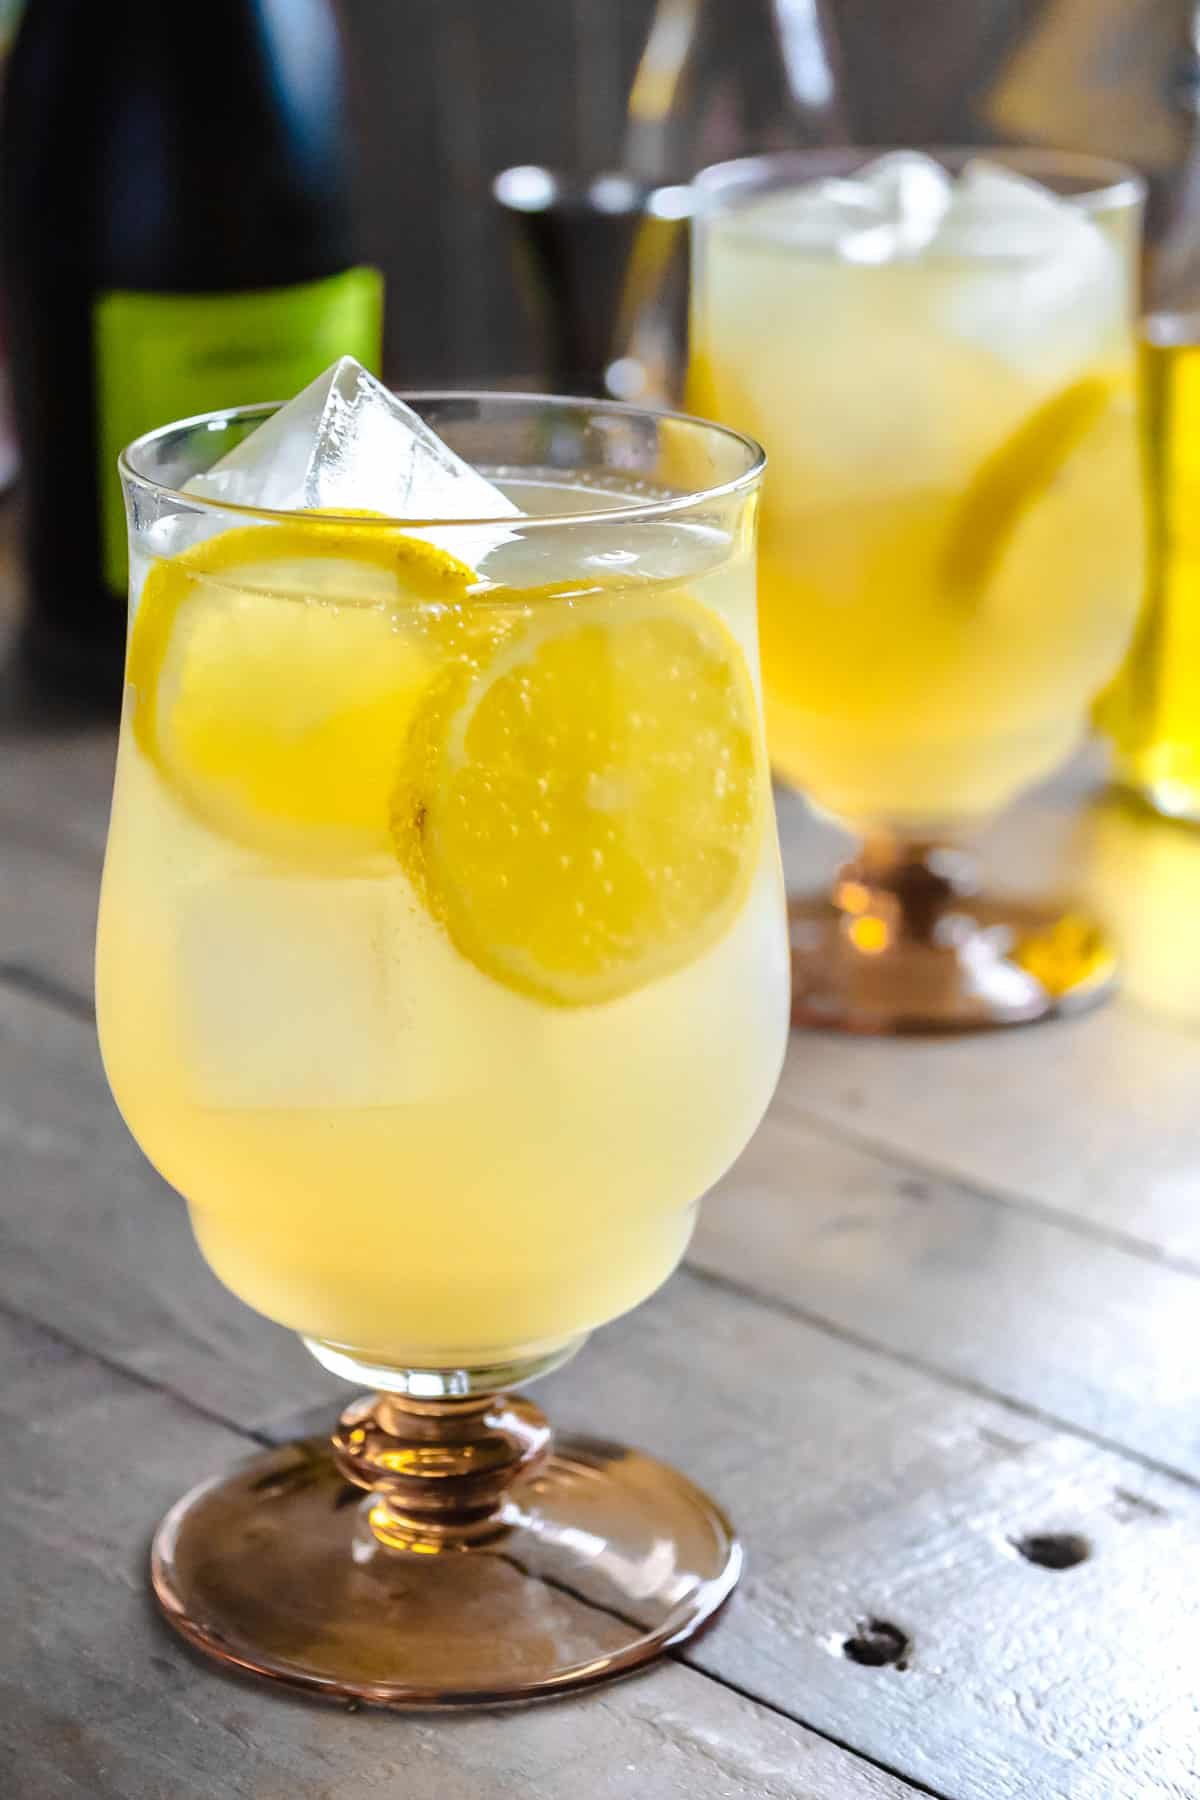 Un spritz au limoncello garni de tranches de citron dans un verre rempli de glace devant un autre spritz au limoncello et une bouteille de prosecco.